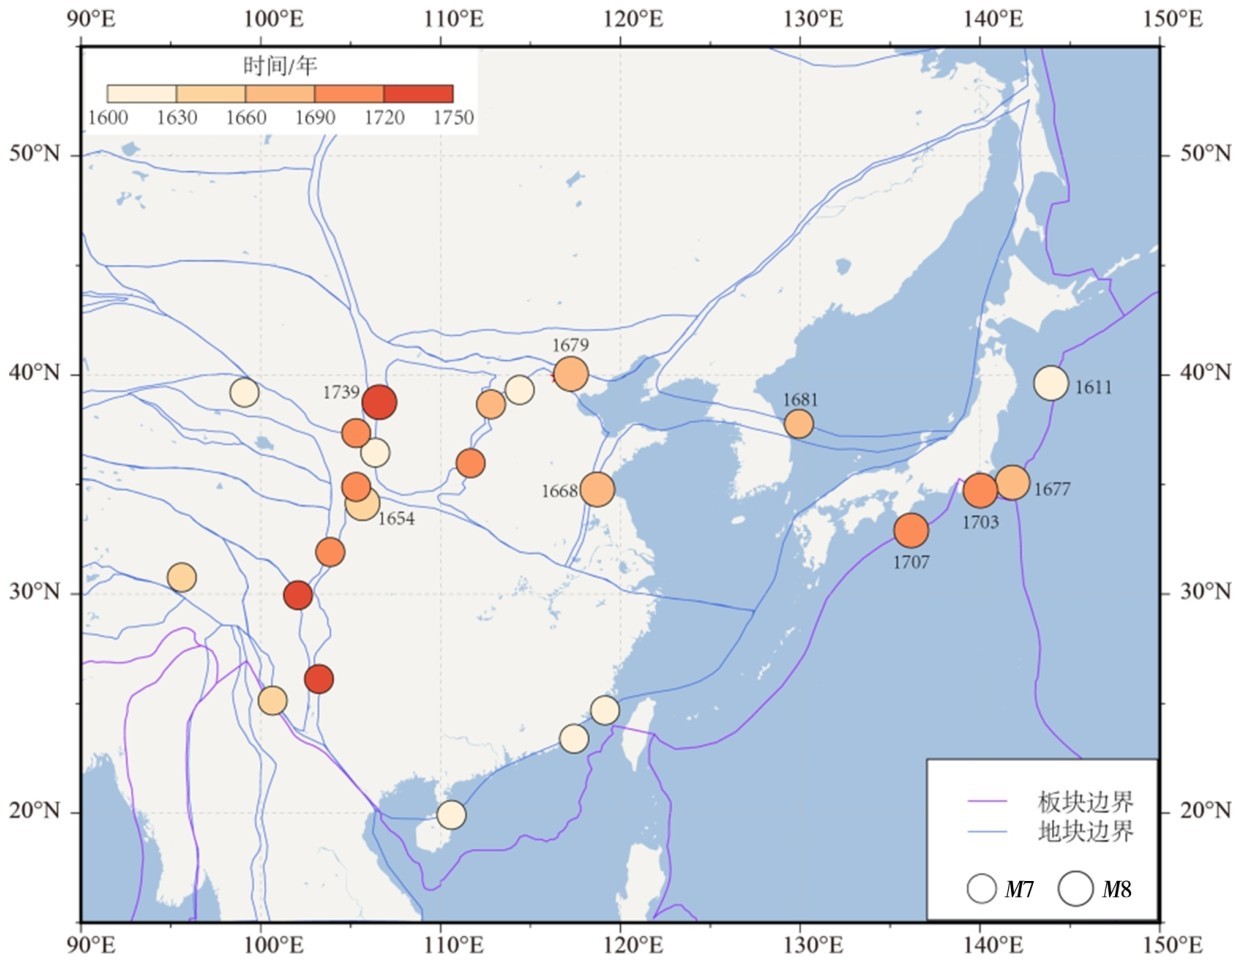 图5 1600—1750年华北地块及周边动力边界7级以上大震分布Fig.5 Distribution of large earthquakes with M≥7 in the North China block and its surrounding dynamic boundary from 1600 to 1750